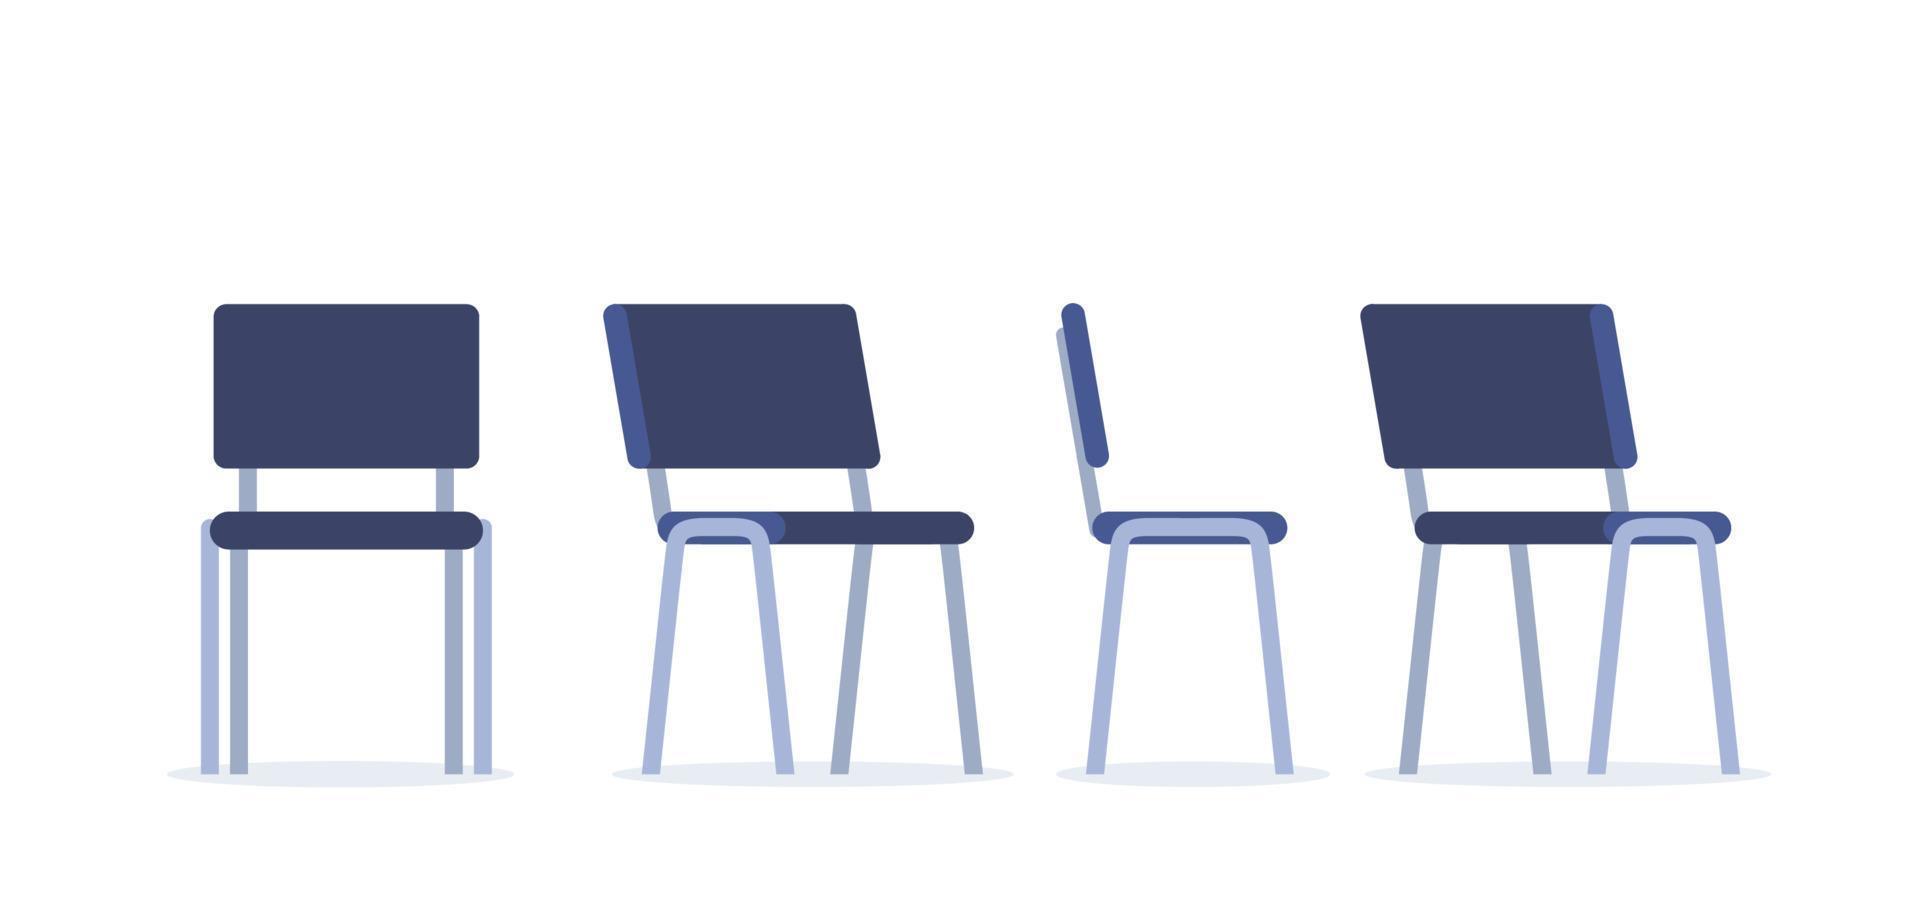 ufficio sedia nel vario punti di Visualizza. mobilia per ufficio interno nel piatto stile. vettore illustrazione.